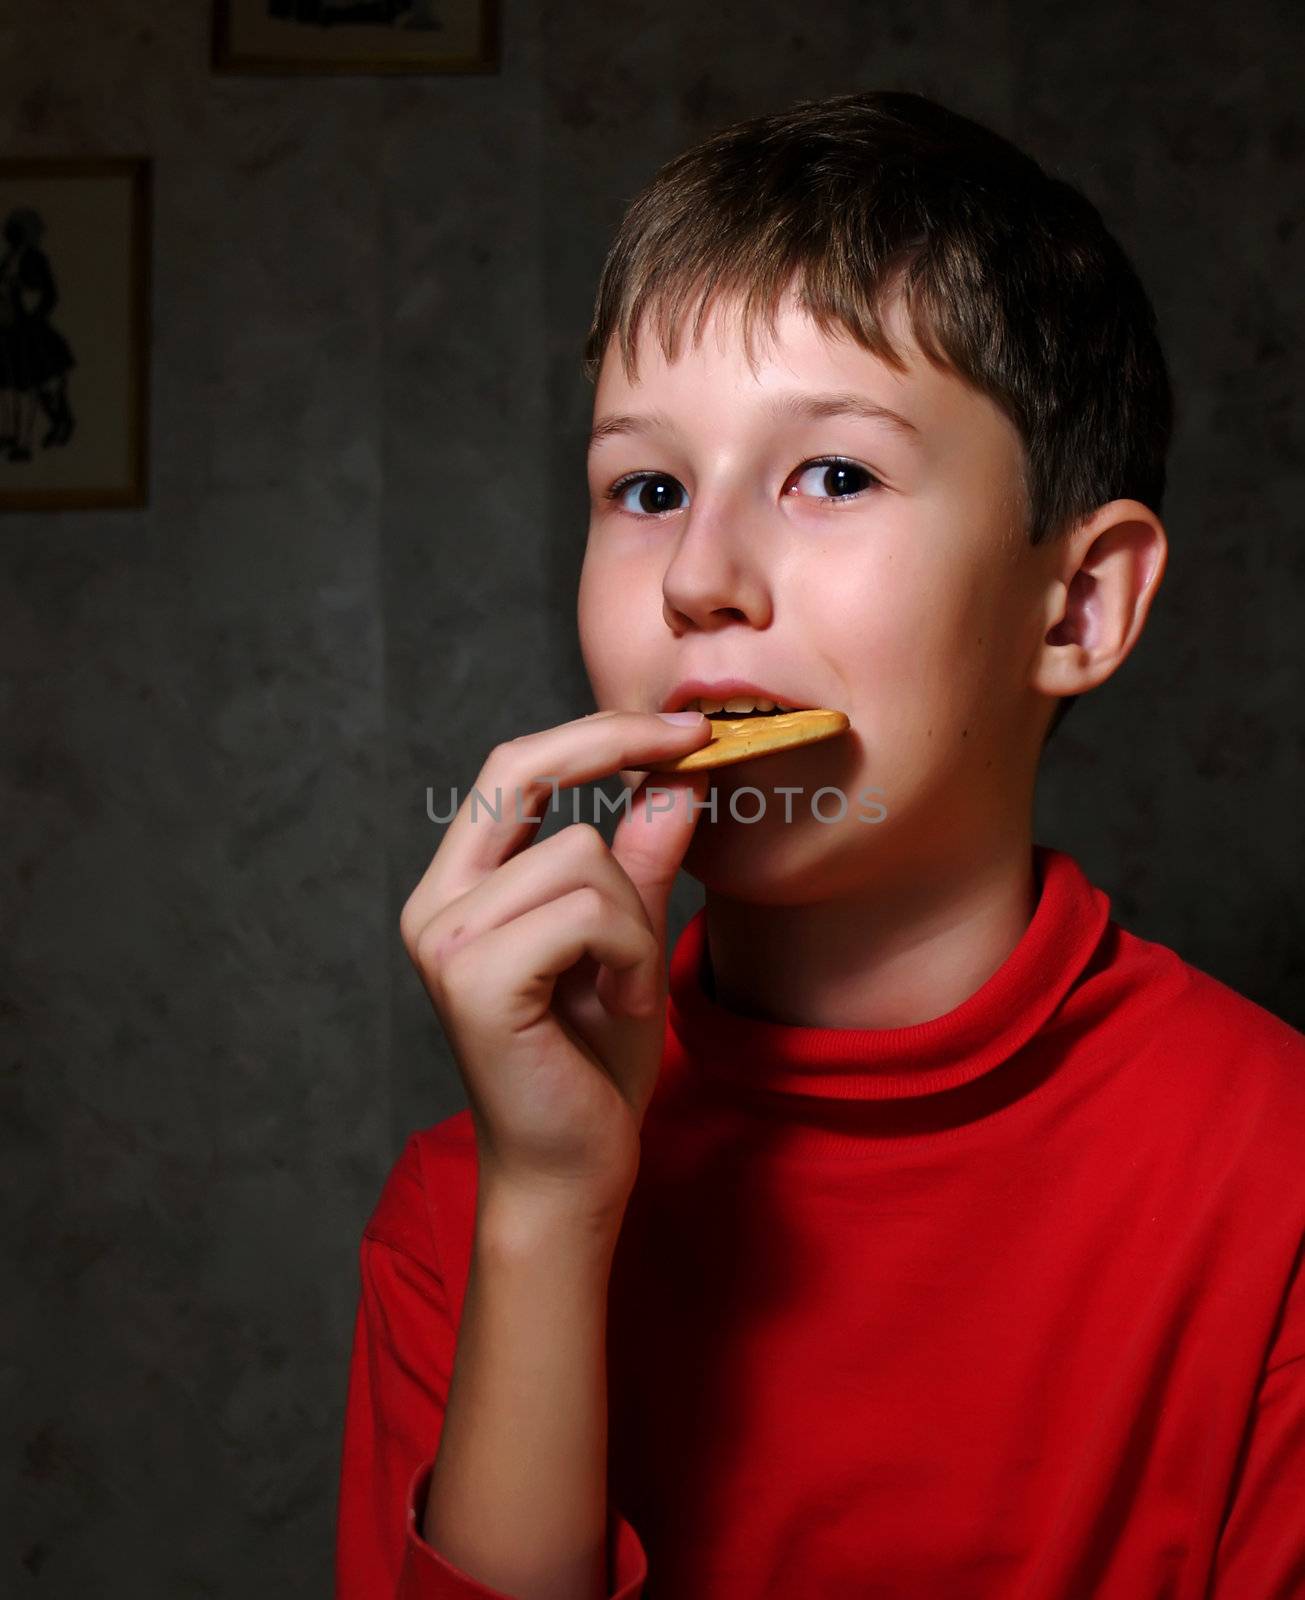 The little boy chews a cracker